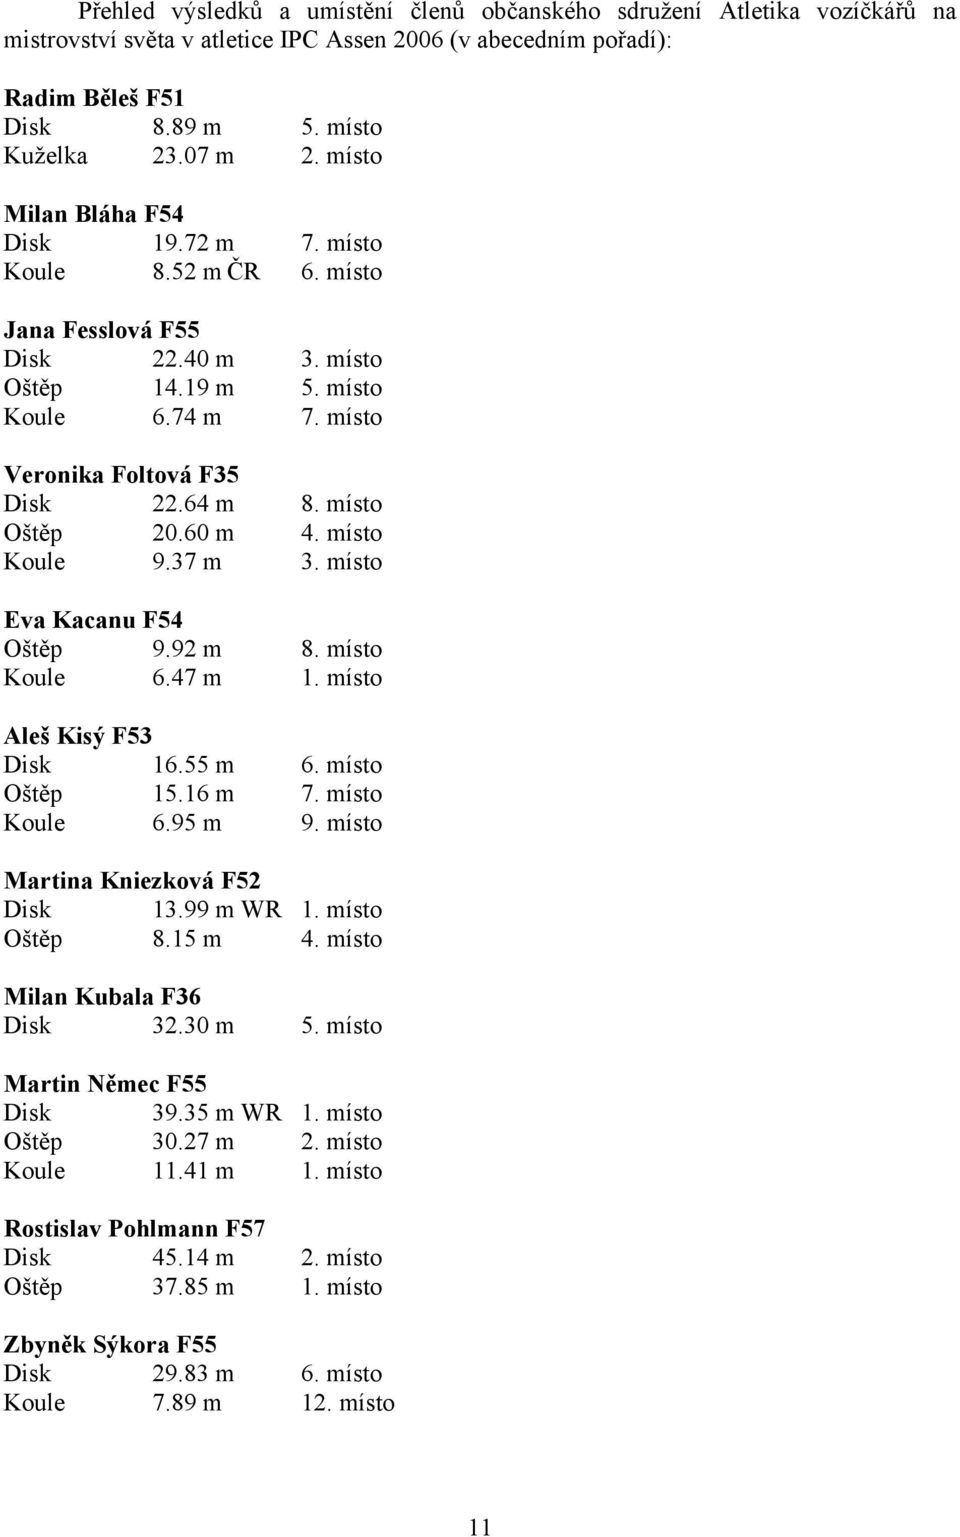 místo Oštěp 20.60 m 4. místo Koule 9.37 m 3. místo Eva Kacanu F54 Oštěp 9.92 m 8. místo Koule 6.47 m 1. místo Aleš Kisý F53 Disk 16.55 m 6. místo Oštěp 15.16 m 7. místo Koule 6.95 m 9.